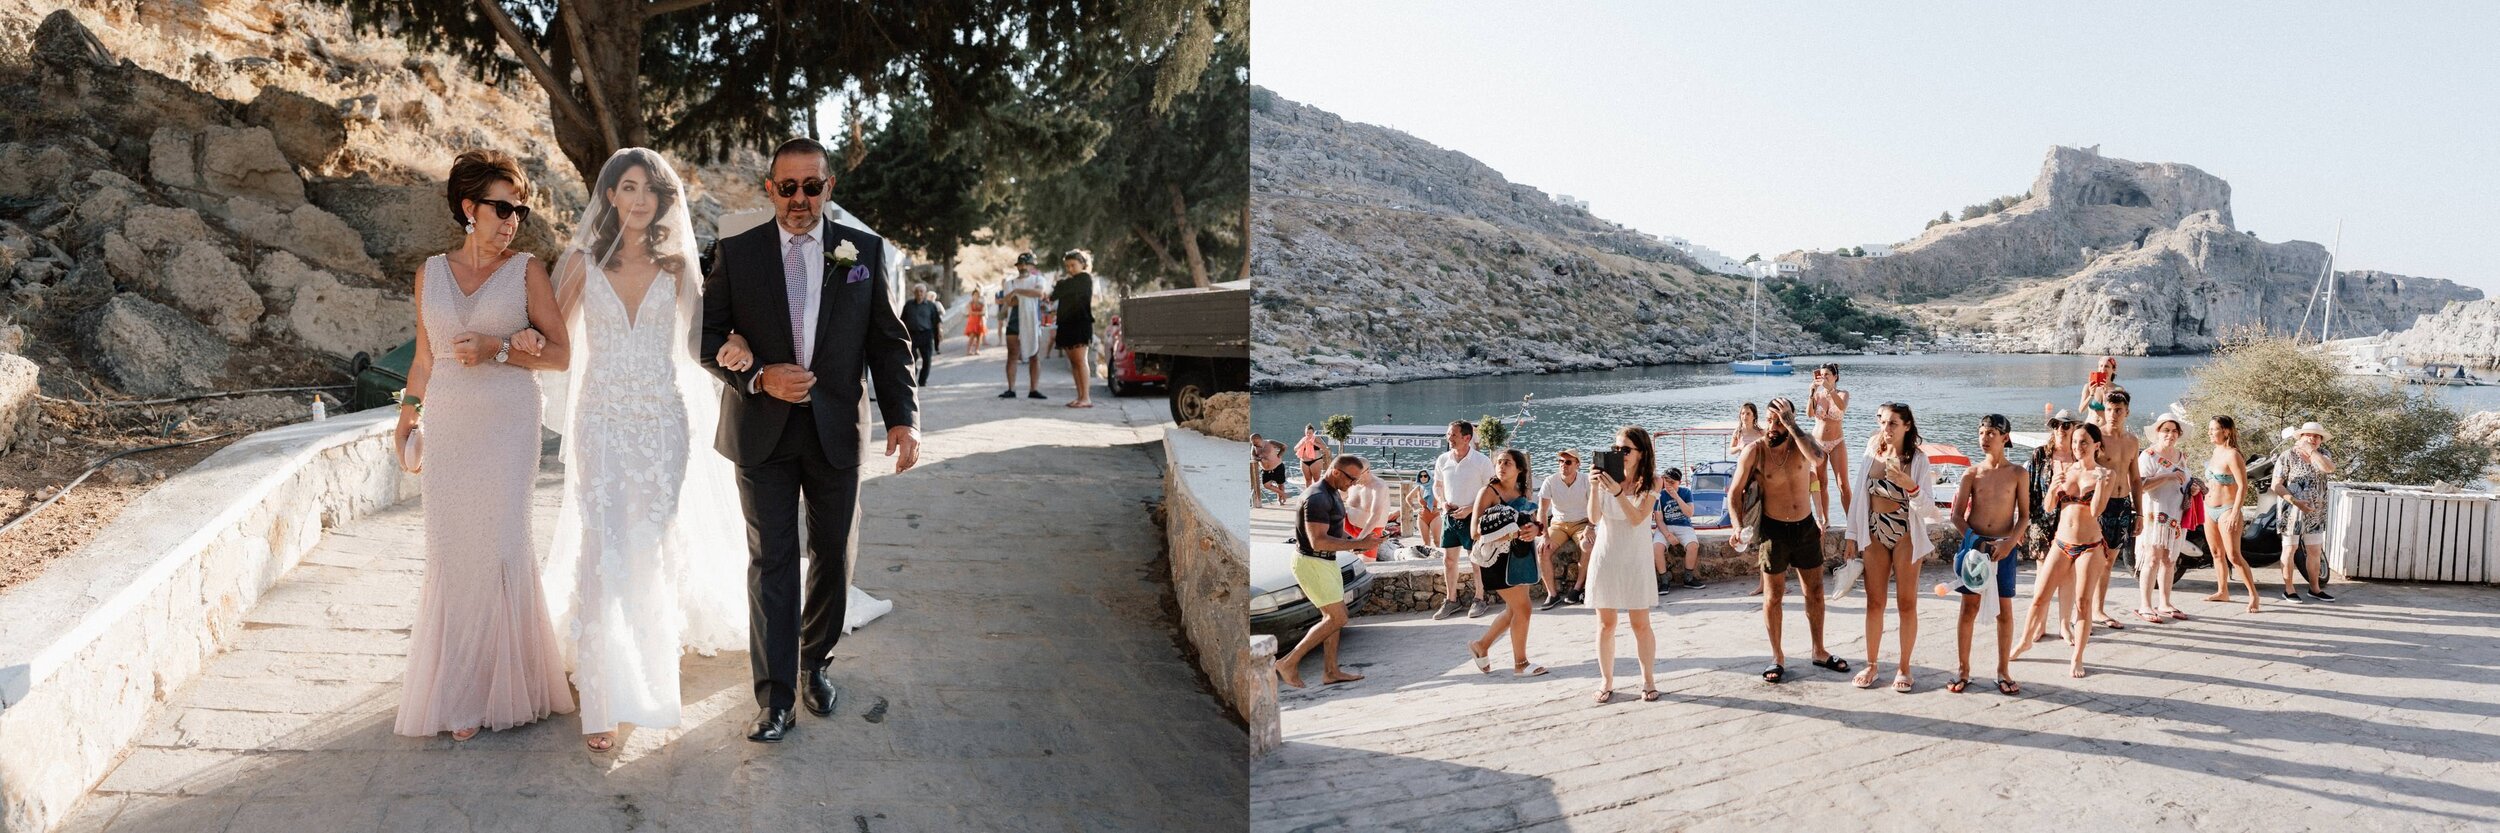 Greece+Santorini+Rhodes+wedding+photogtaphy+-+85.jpg